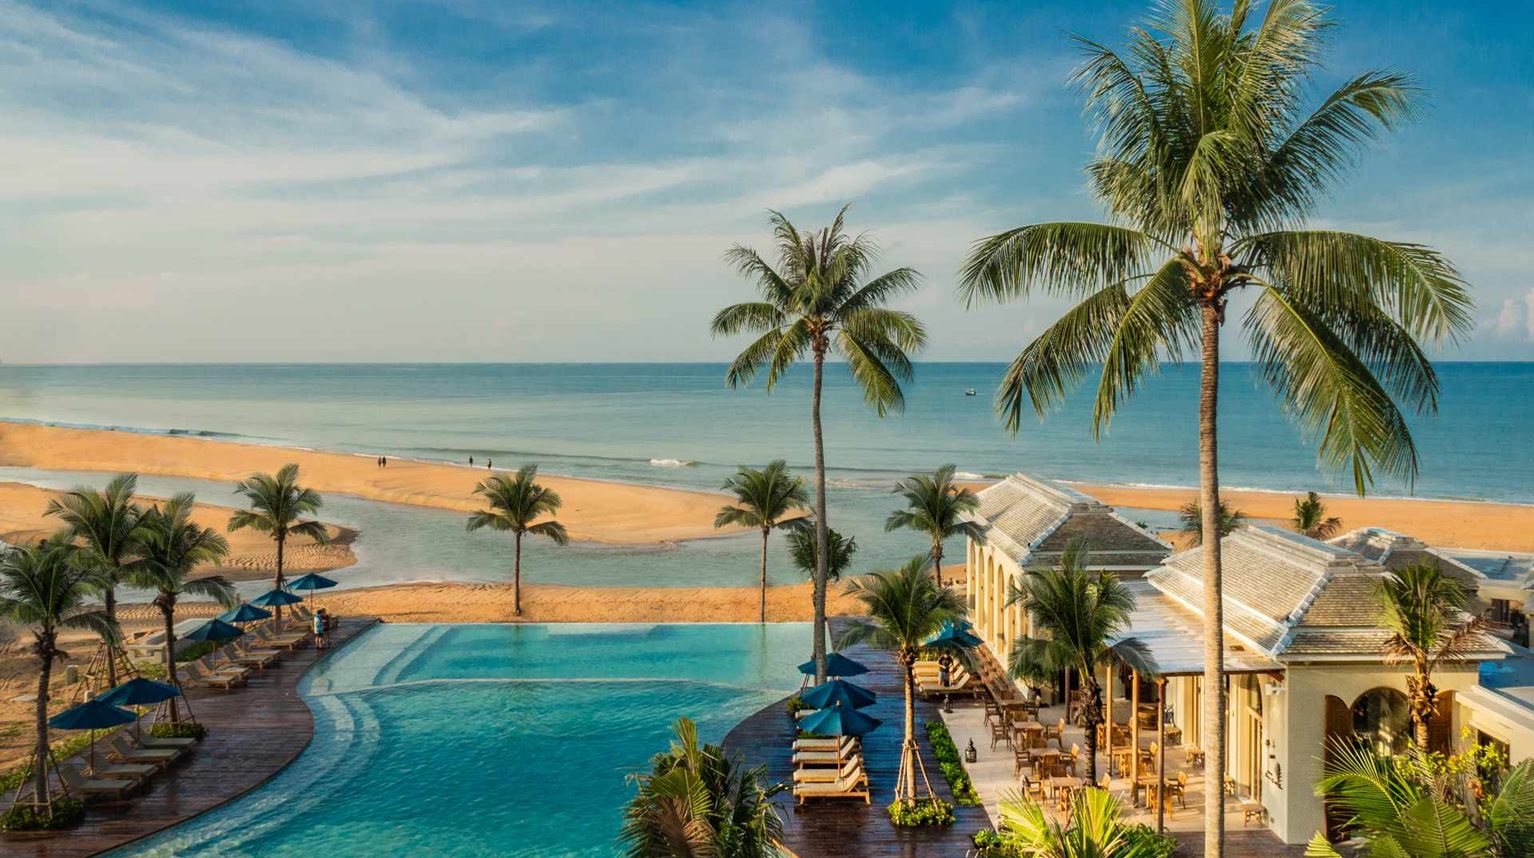 Thailand, Khao Lak, Devasom, Pool View